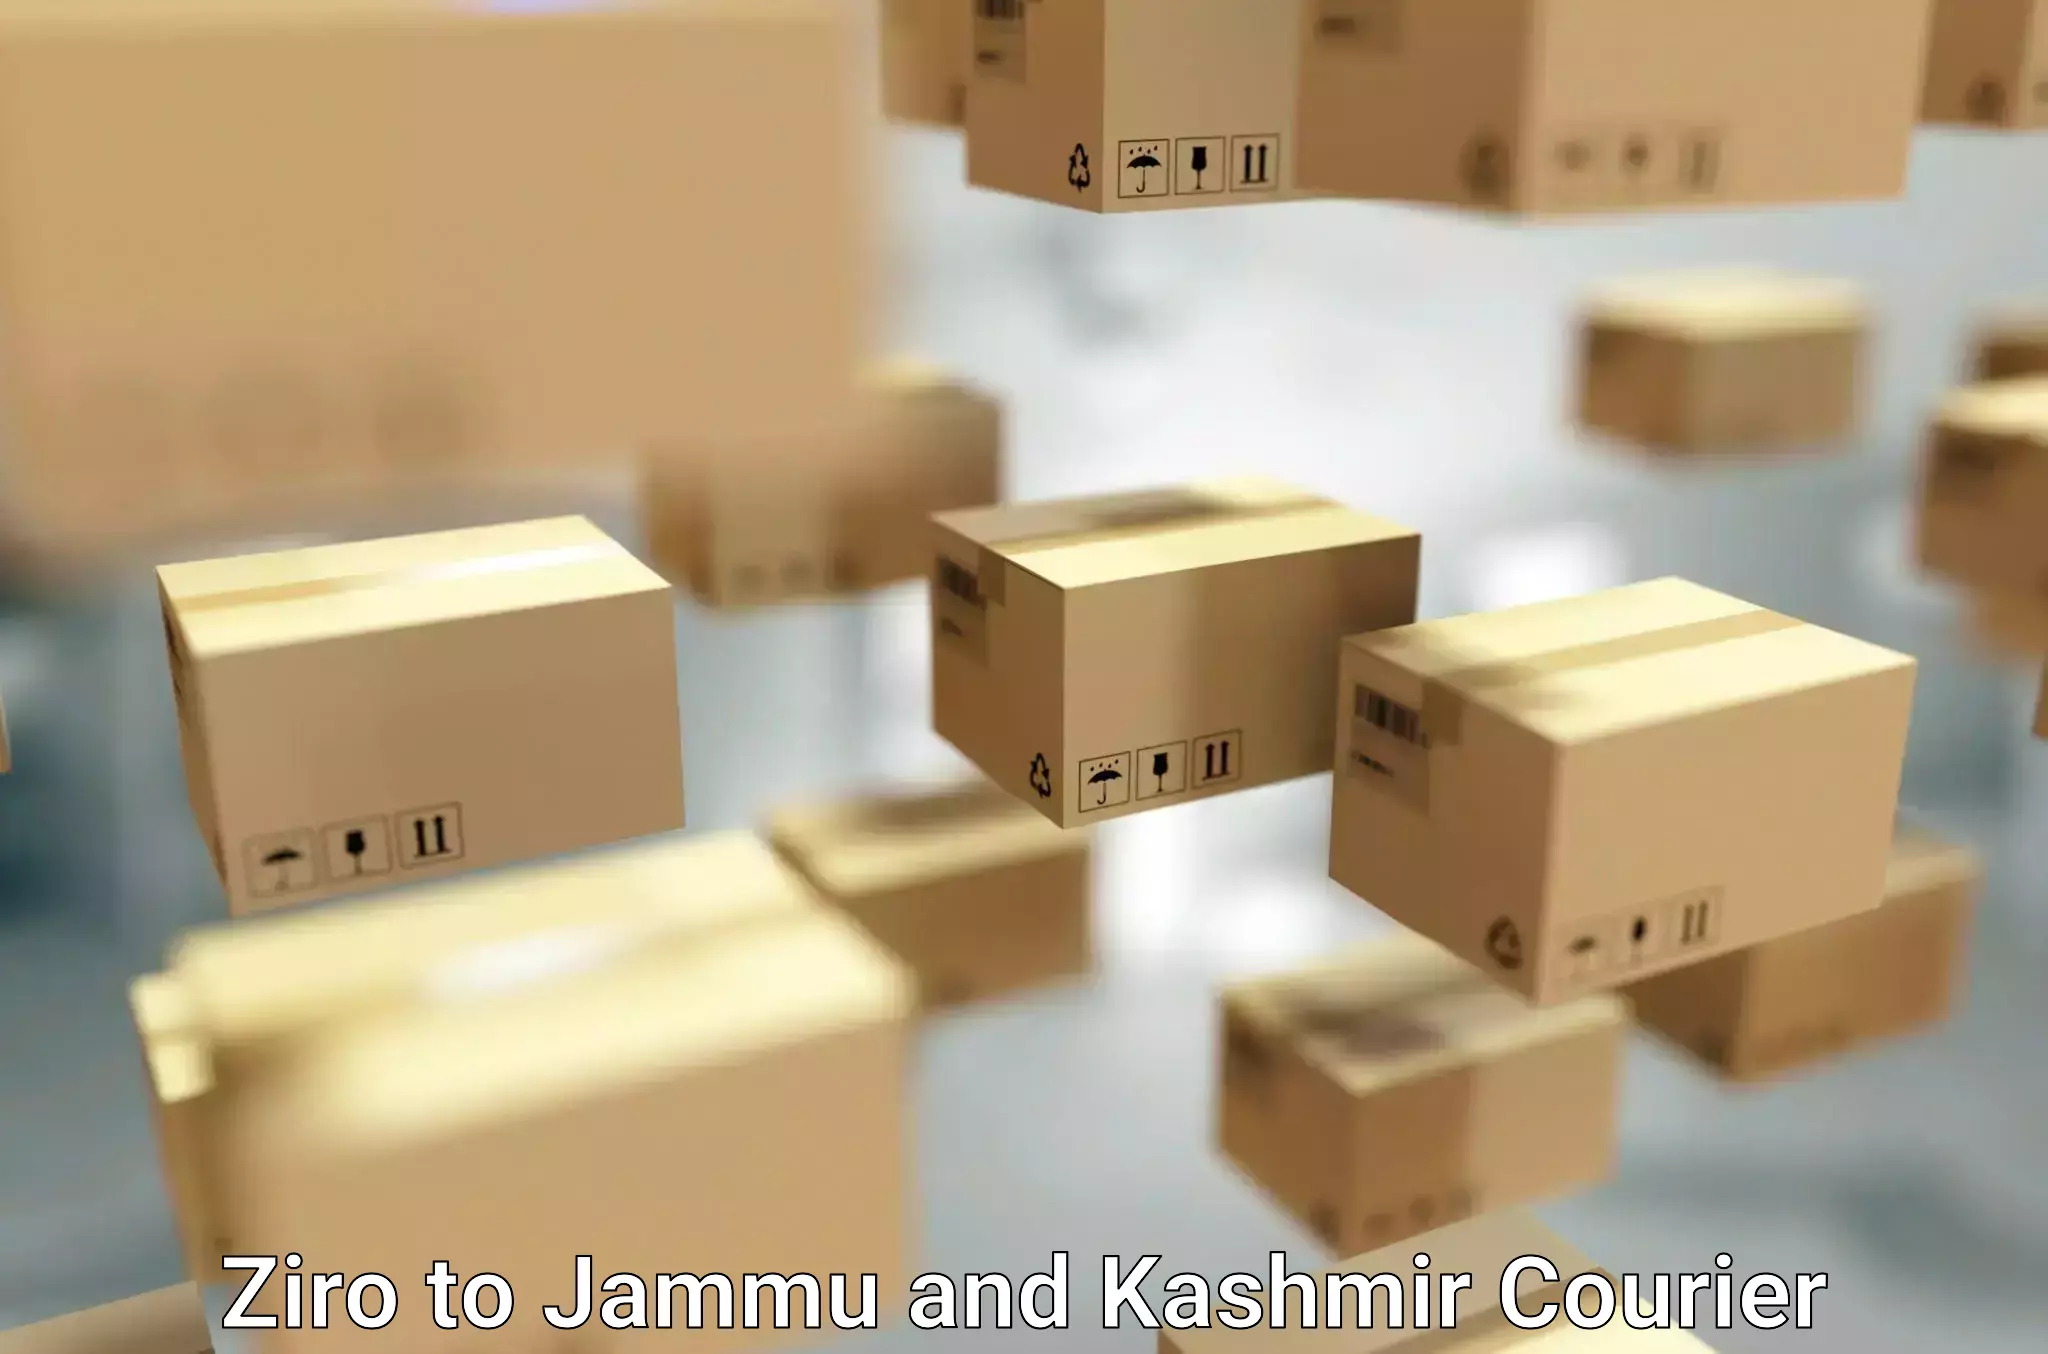 Seamless moving process Ziro to University of Jammu